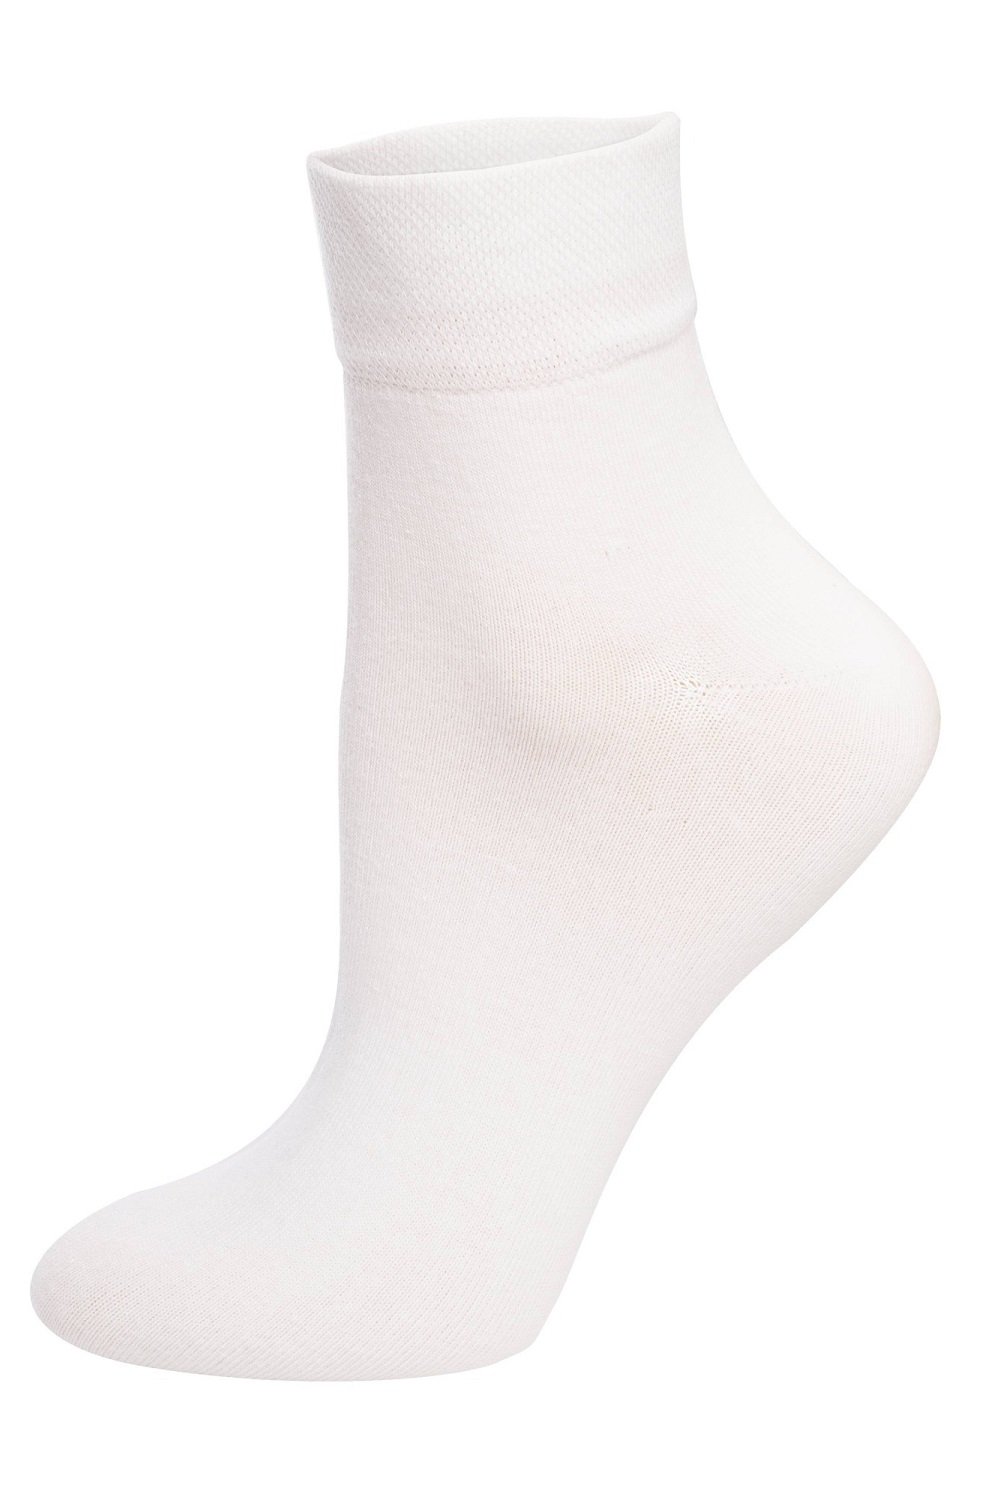 Мужские носки классические однотонные Italian Fashion M06, 45-47, білий